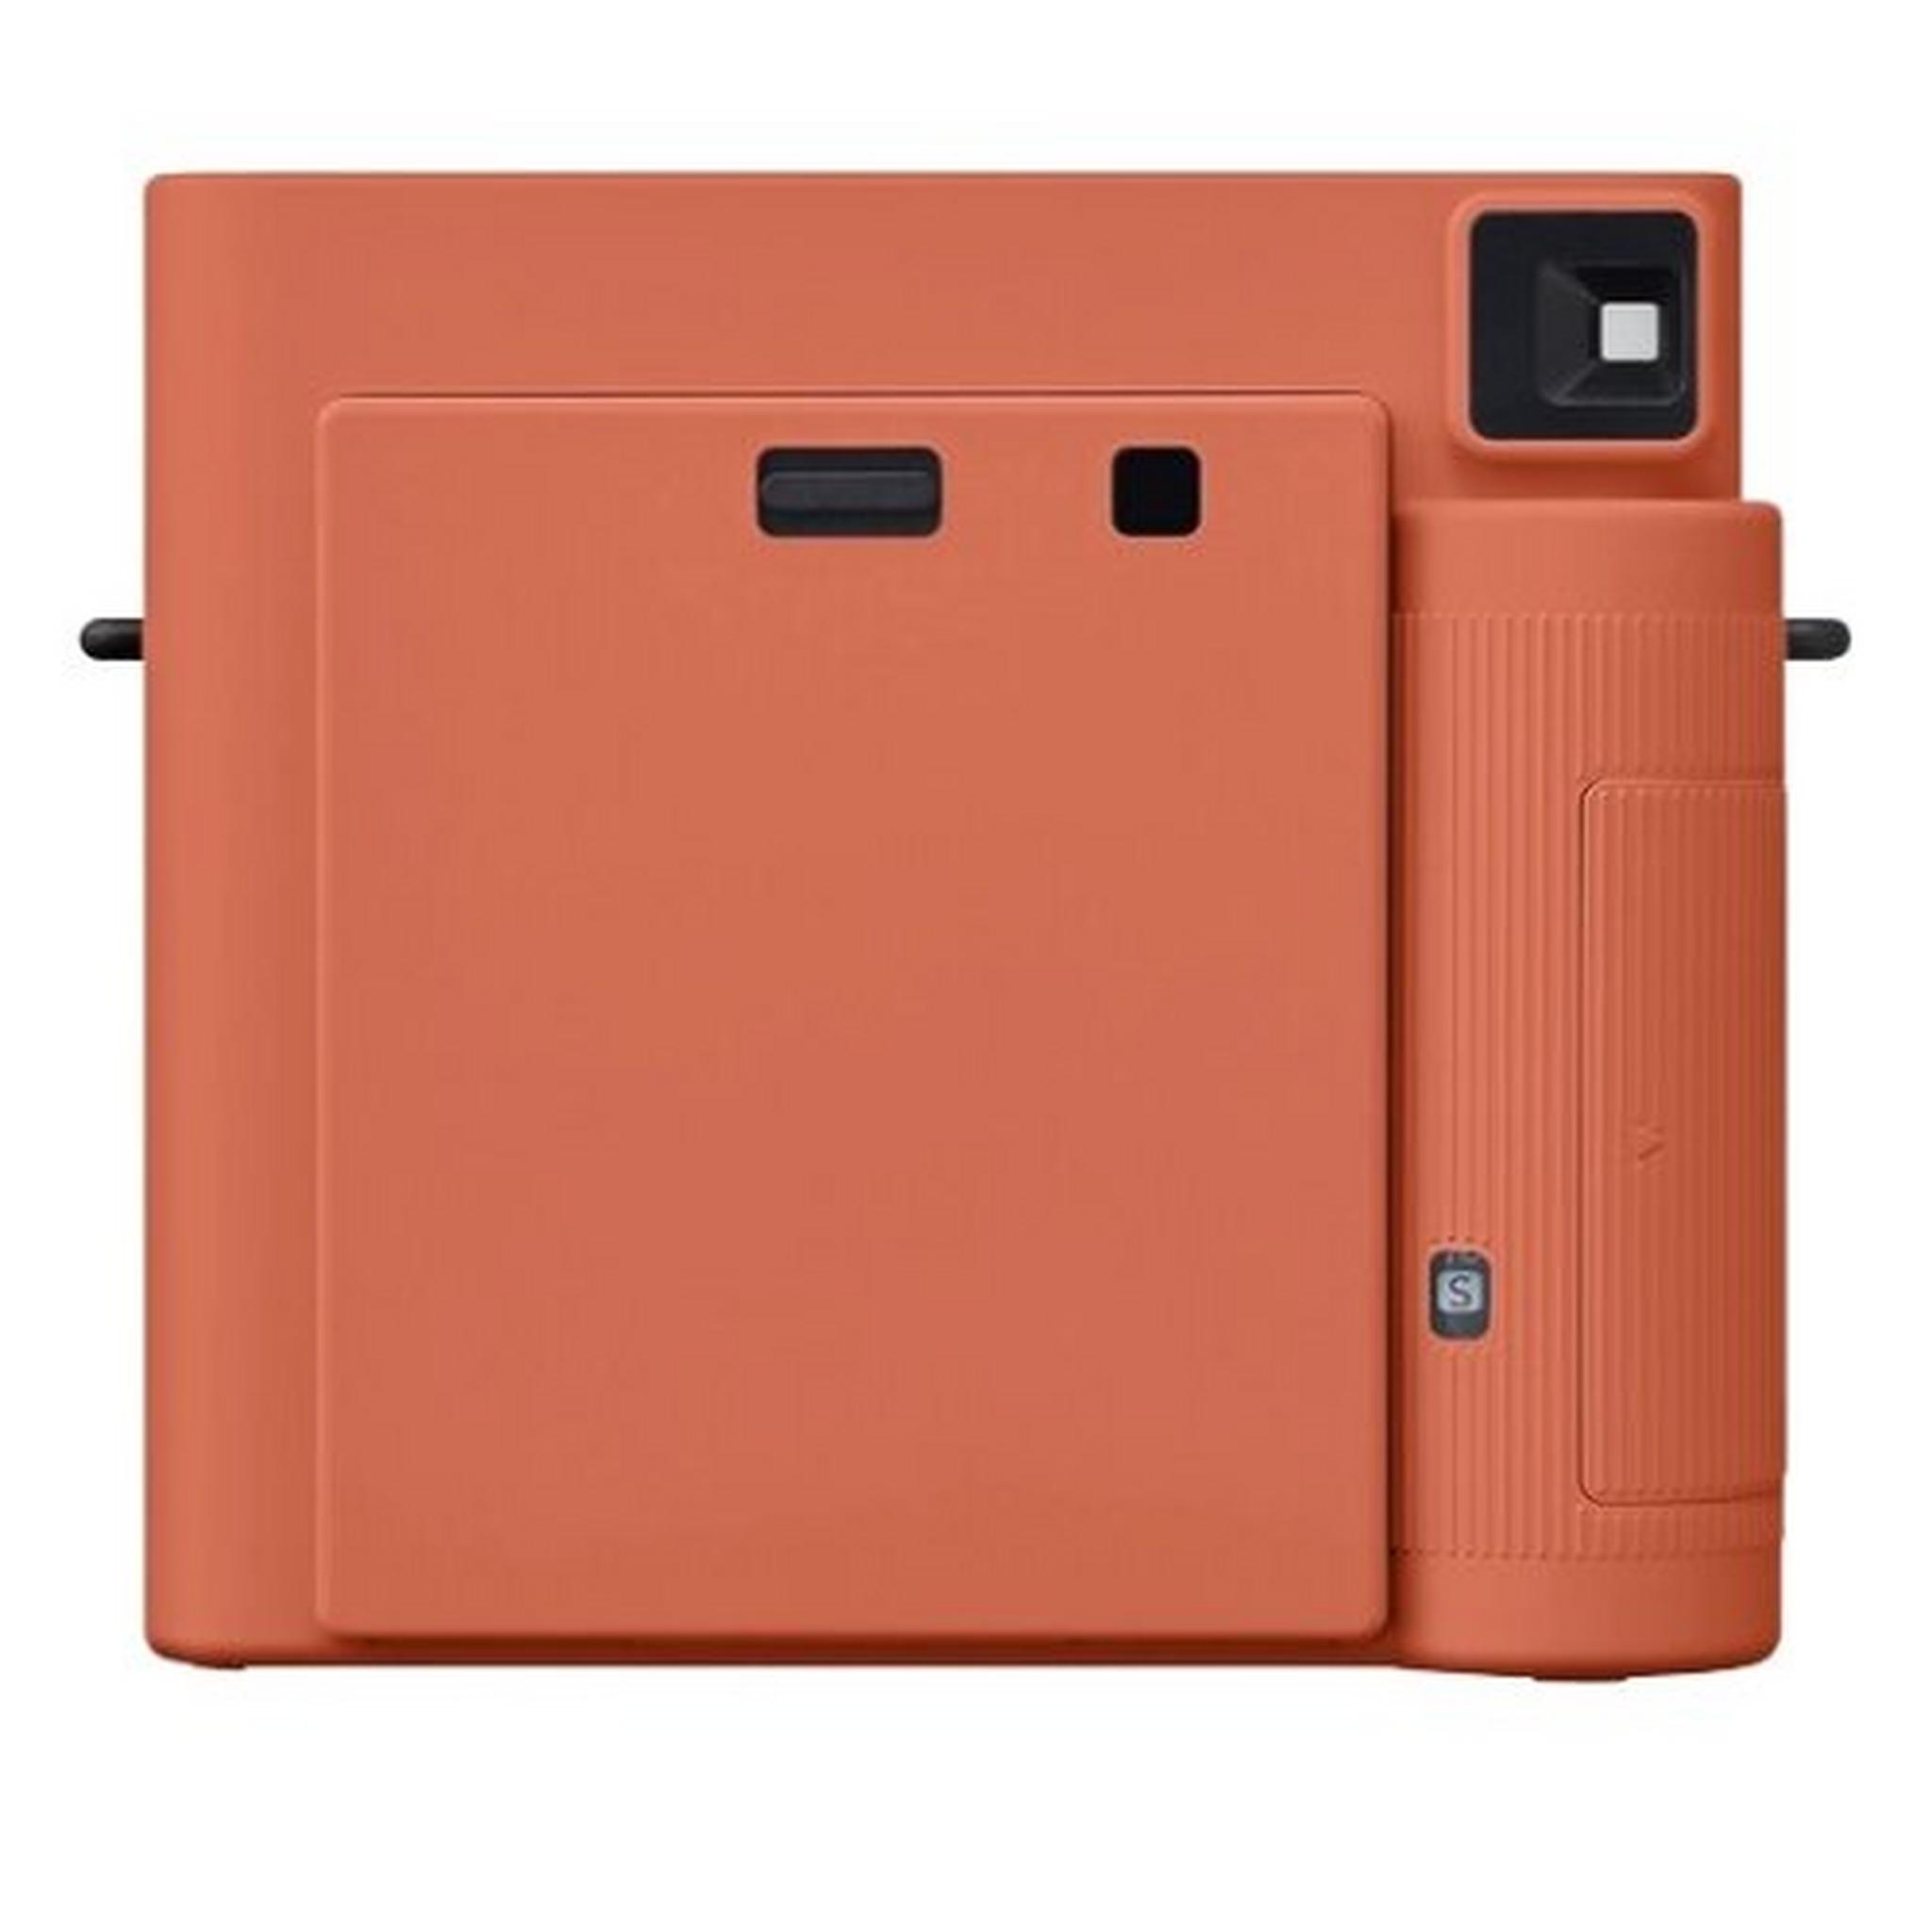 Fujifilm Instax Square SQ1 Instant Film Camera - Terracotta Orange